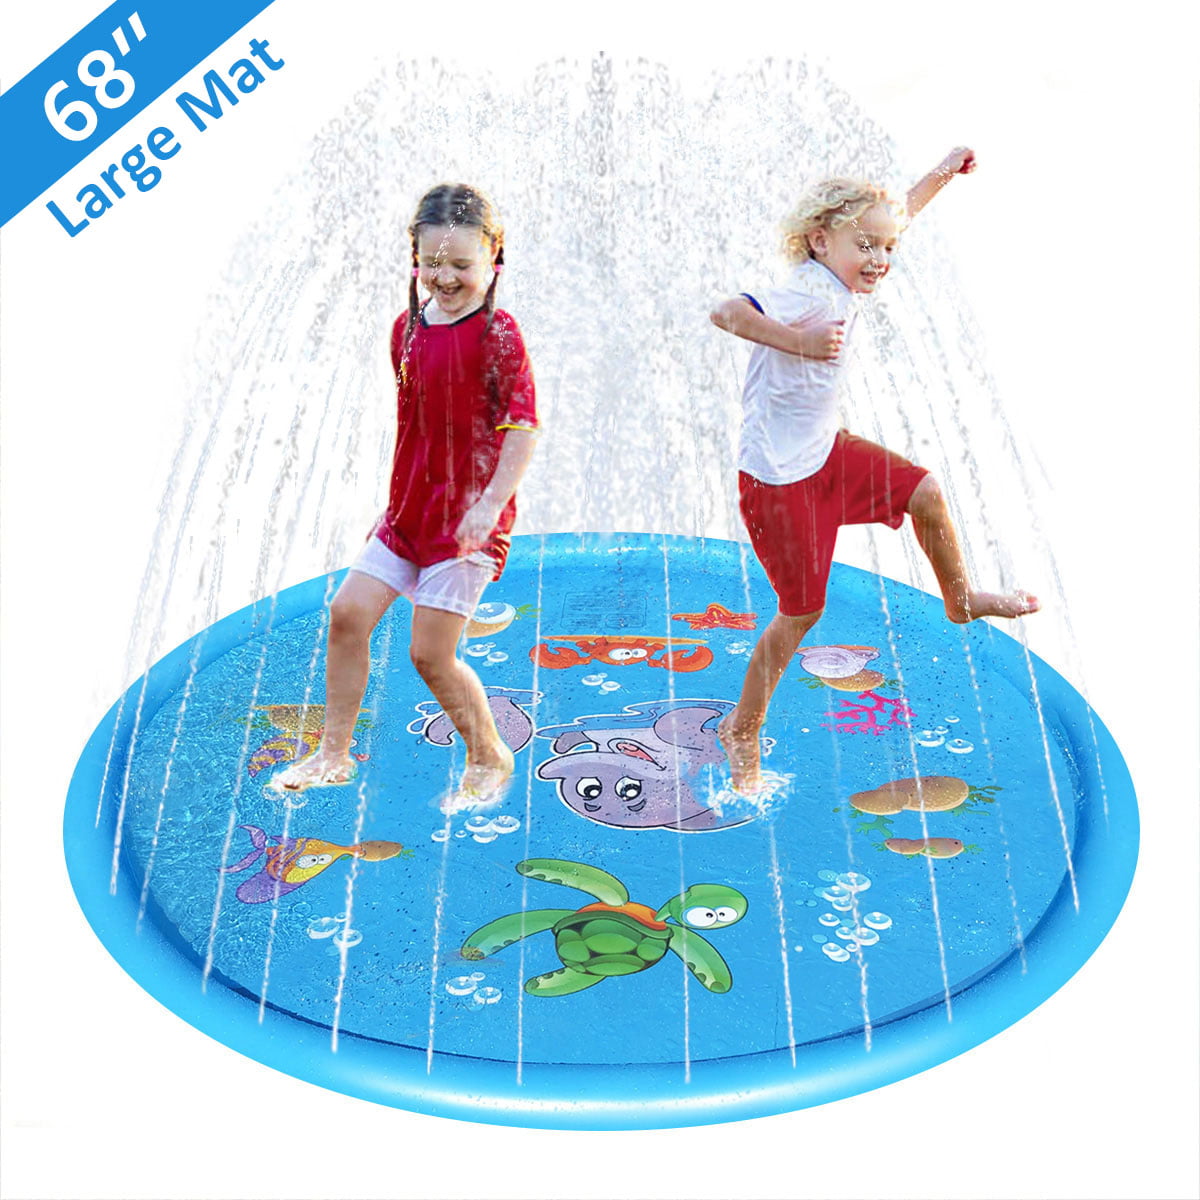 Bab... 68” Outdoor Summer Splash Mat for Toddlers PEFECEVE Splash Pad for Kids 